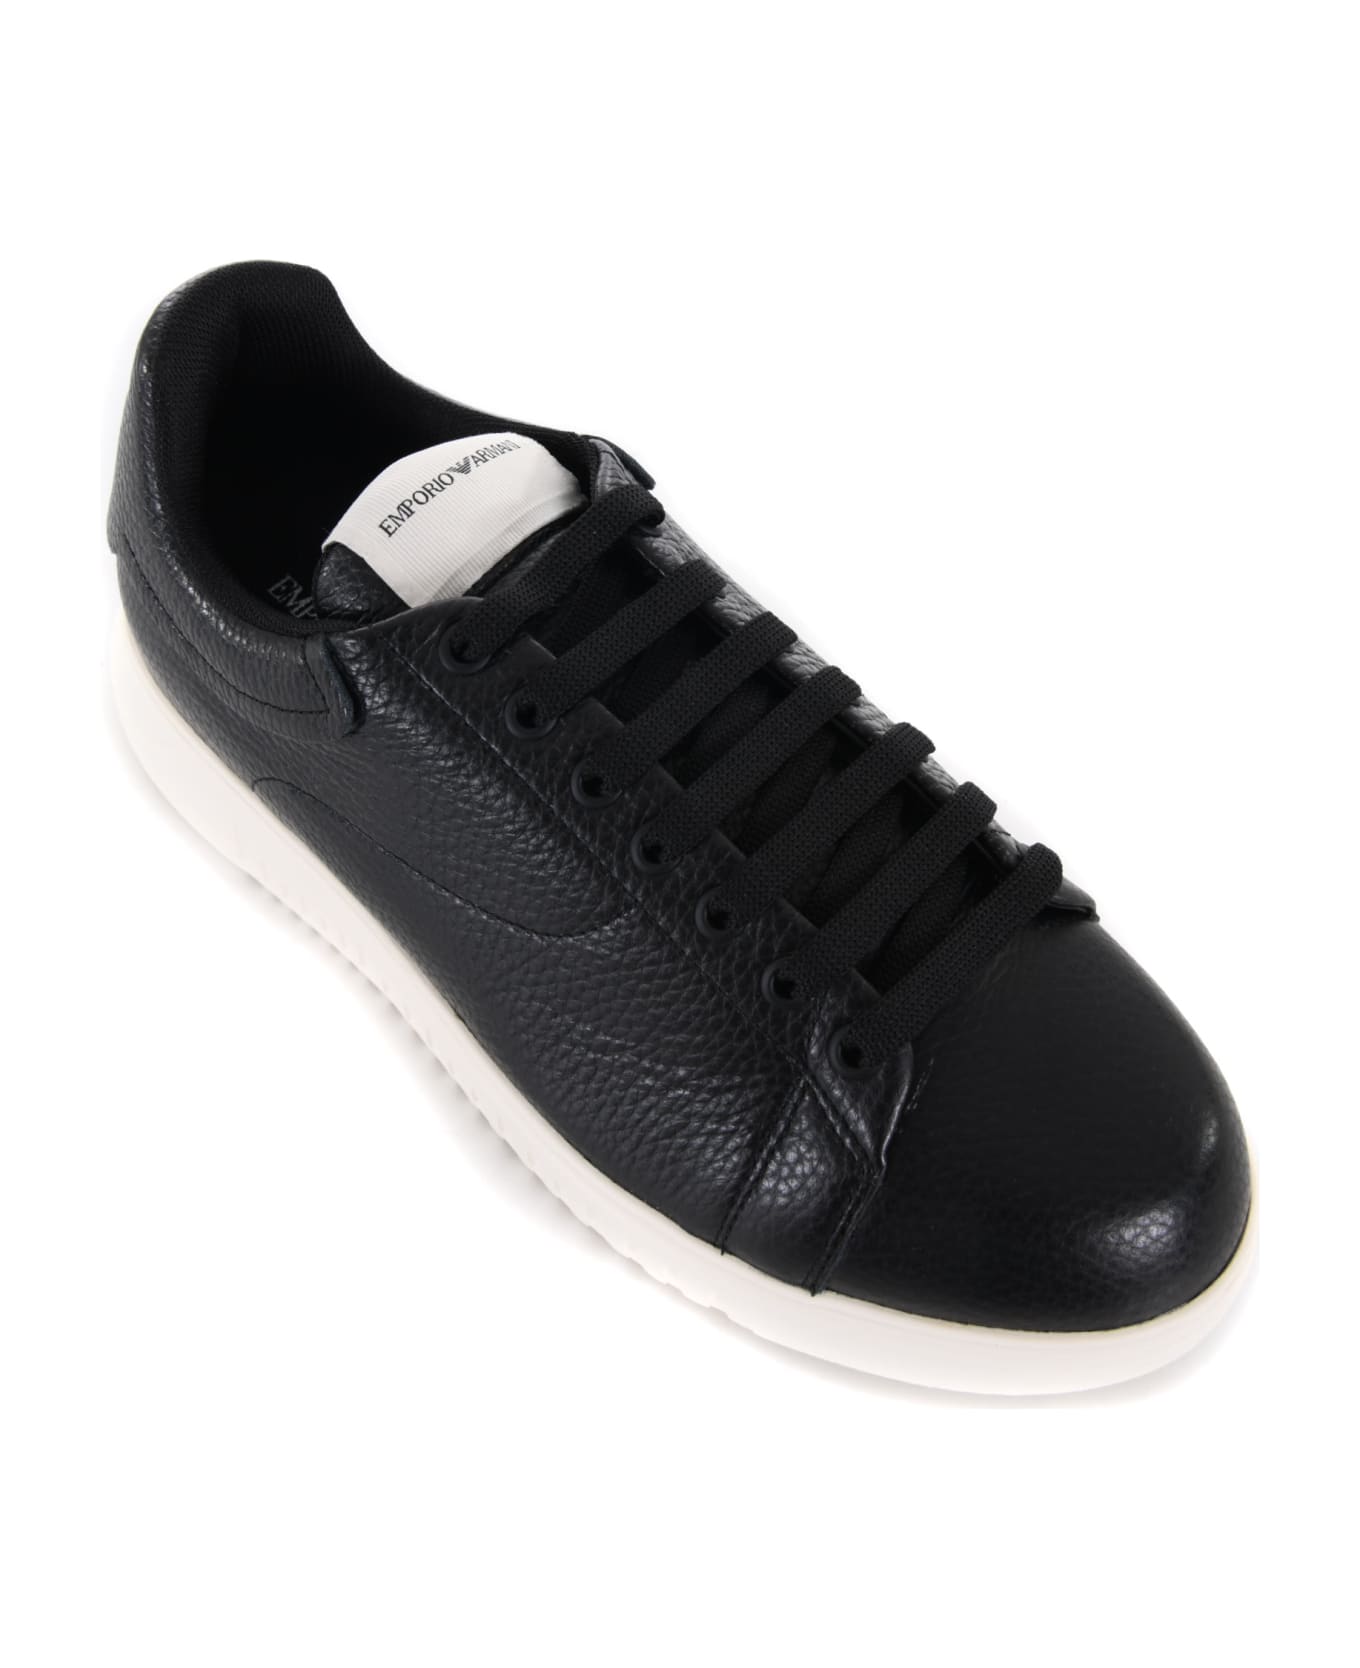 Emporio Armani Leather Sneakers - Nero